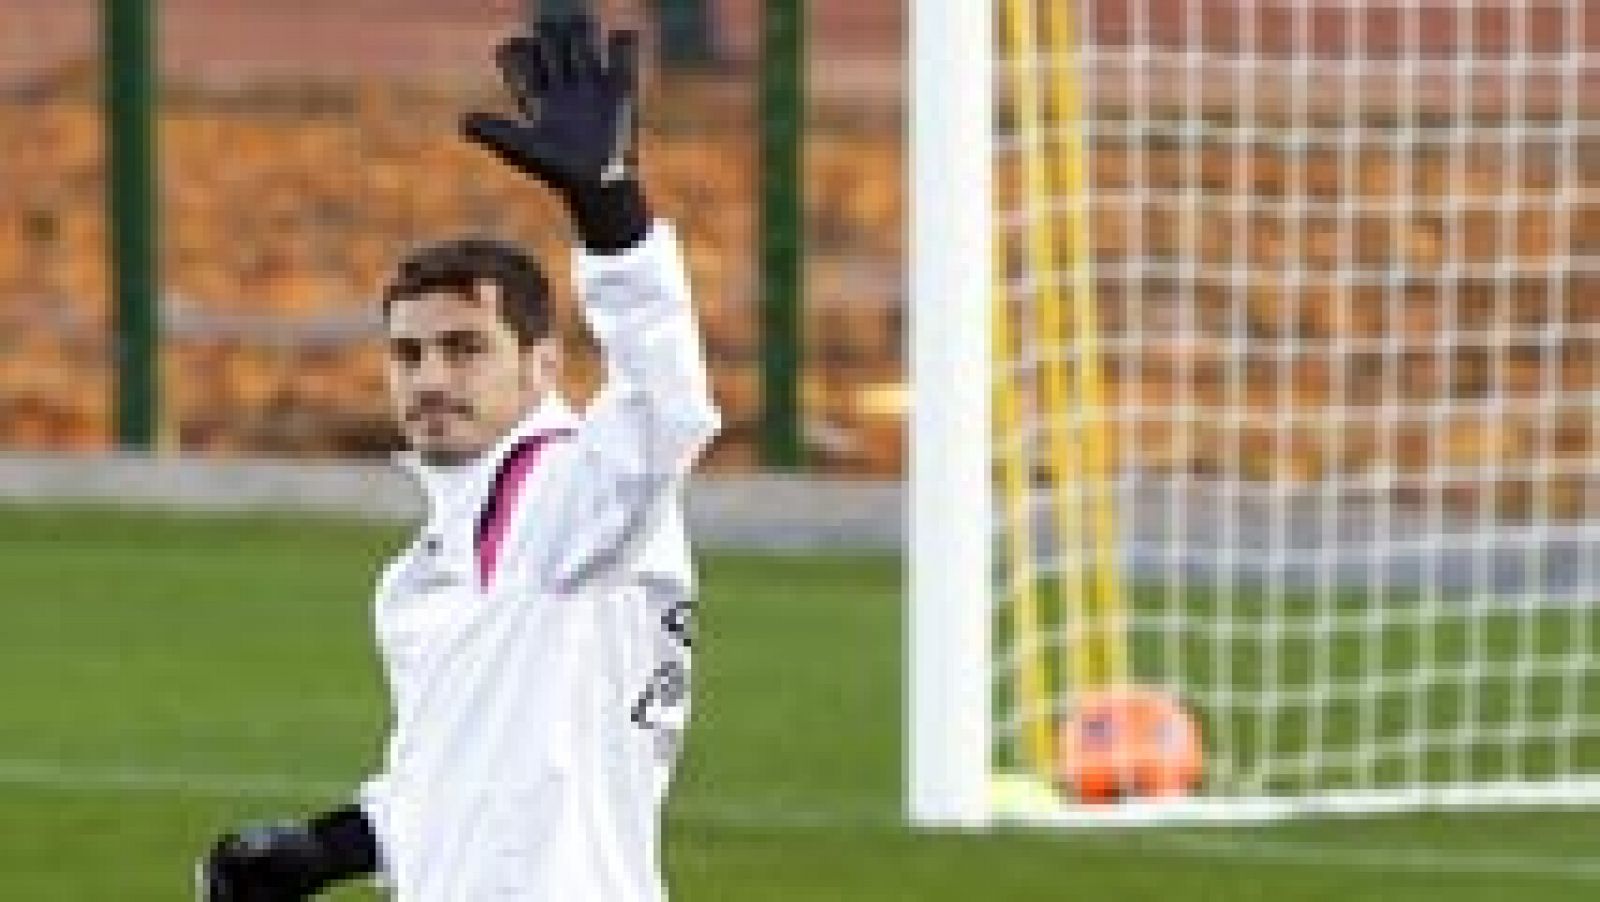 Iker Casillas está a punto de cerrar el acuerdo económico con el Real Madrid para su salida al Oporto, según ha podido saber TVE. A falta de unos flecos, el meta madridista resolverá este miércoles su marcha del club de toda su vida.